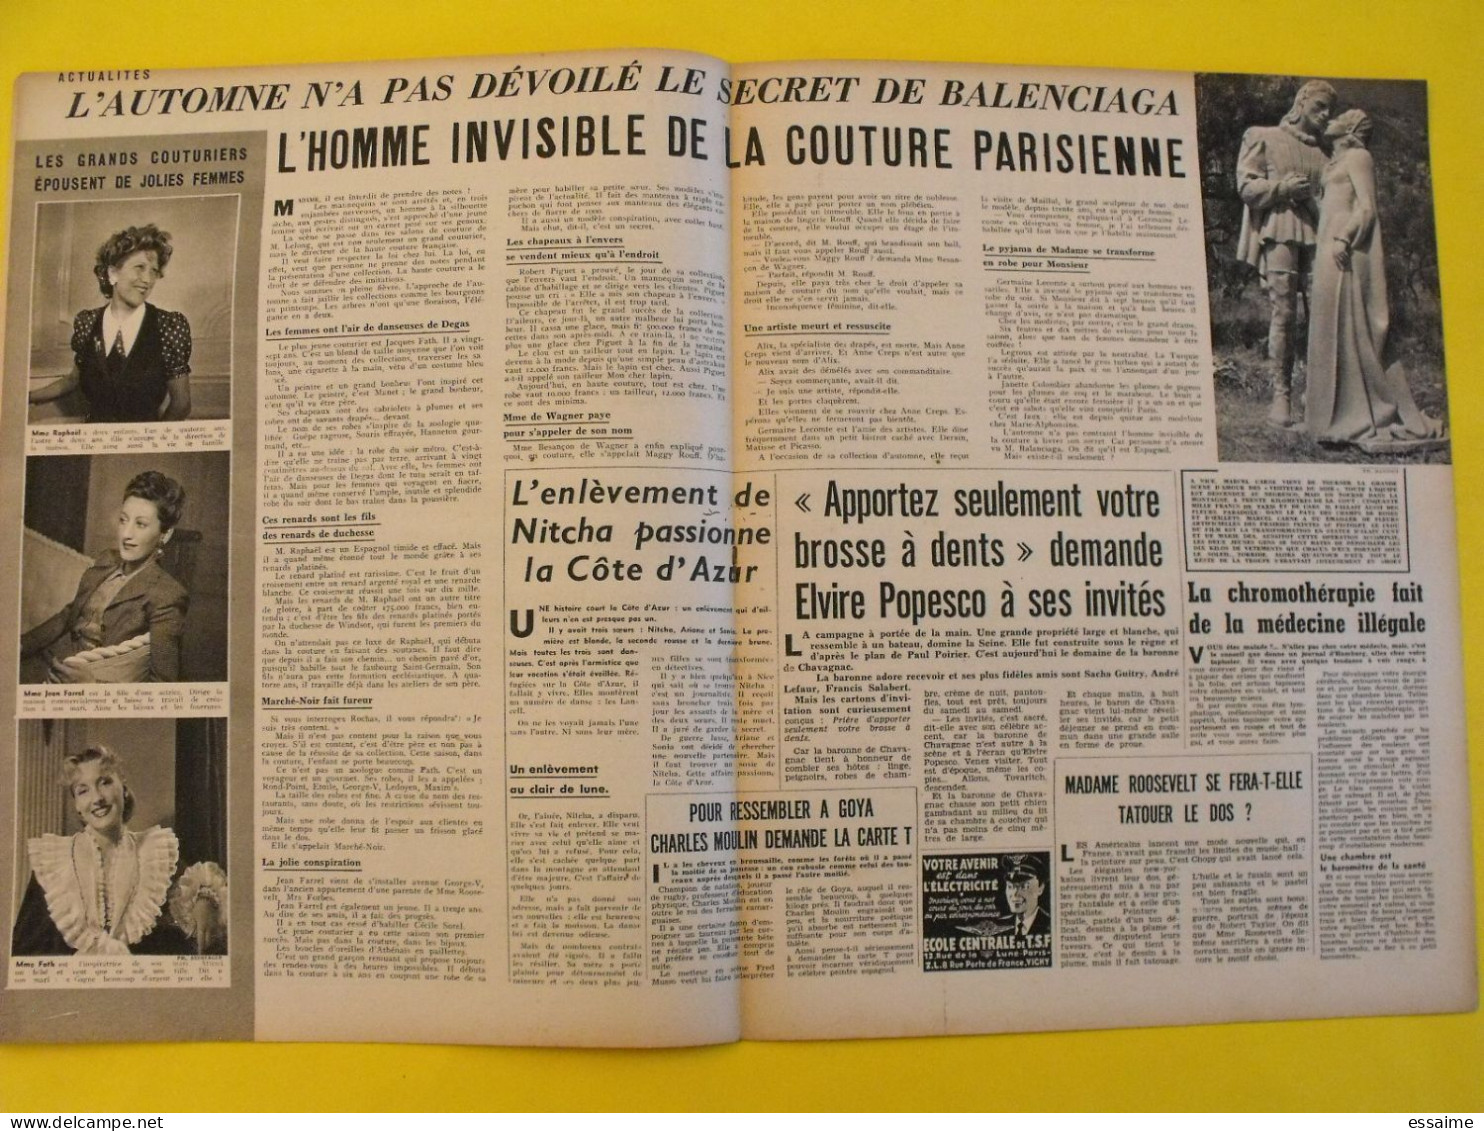 6 revues La semaine de 1942. actualités guerre photos collaboration stalingrad dakar josseline gael tobrouk moscou